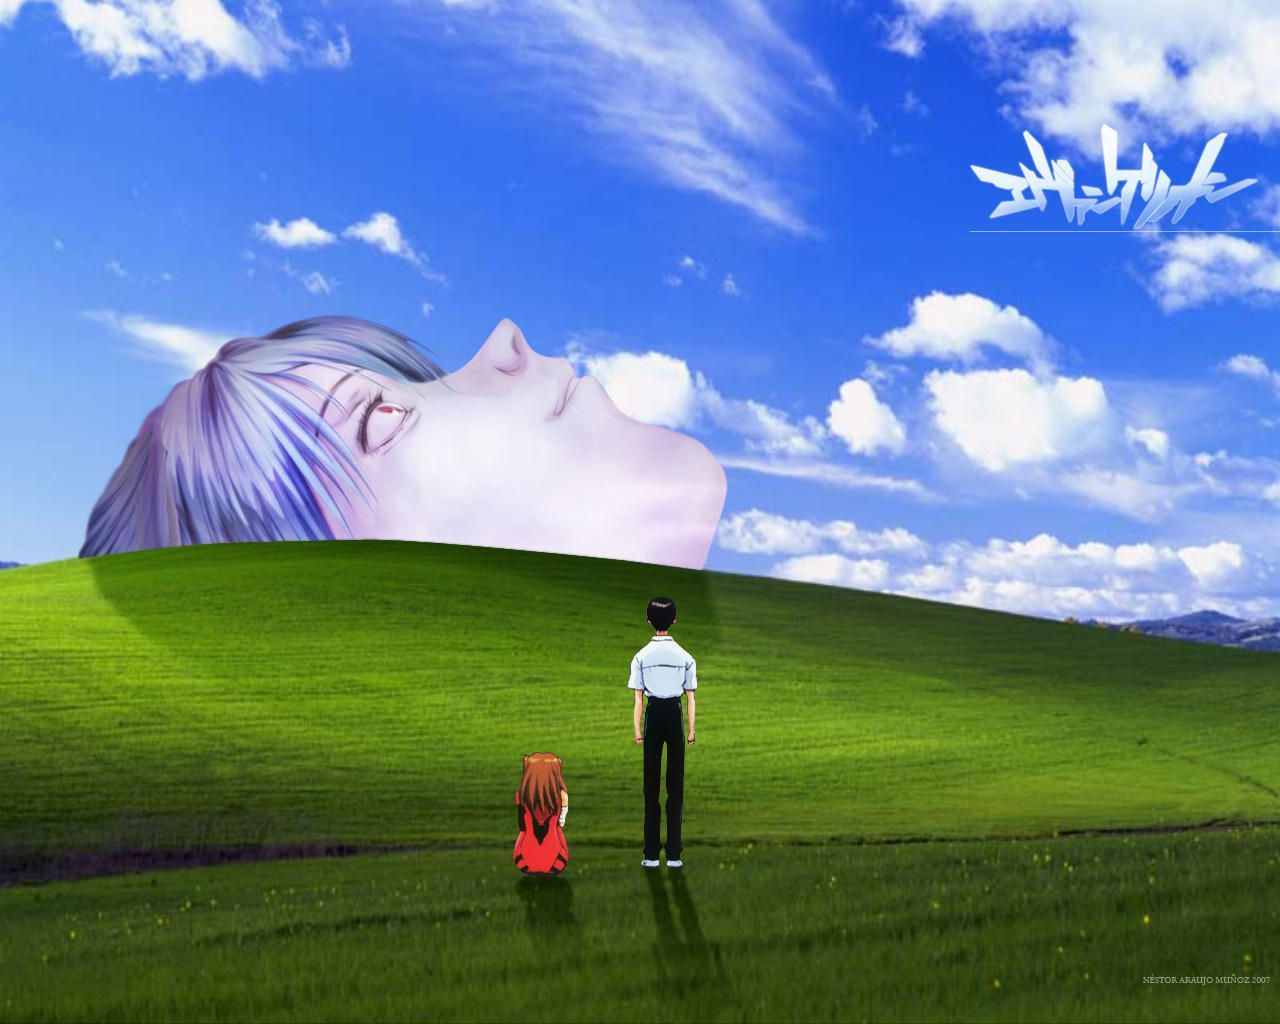 Windows XP Bliss Wallpaper .com